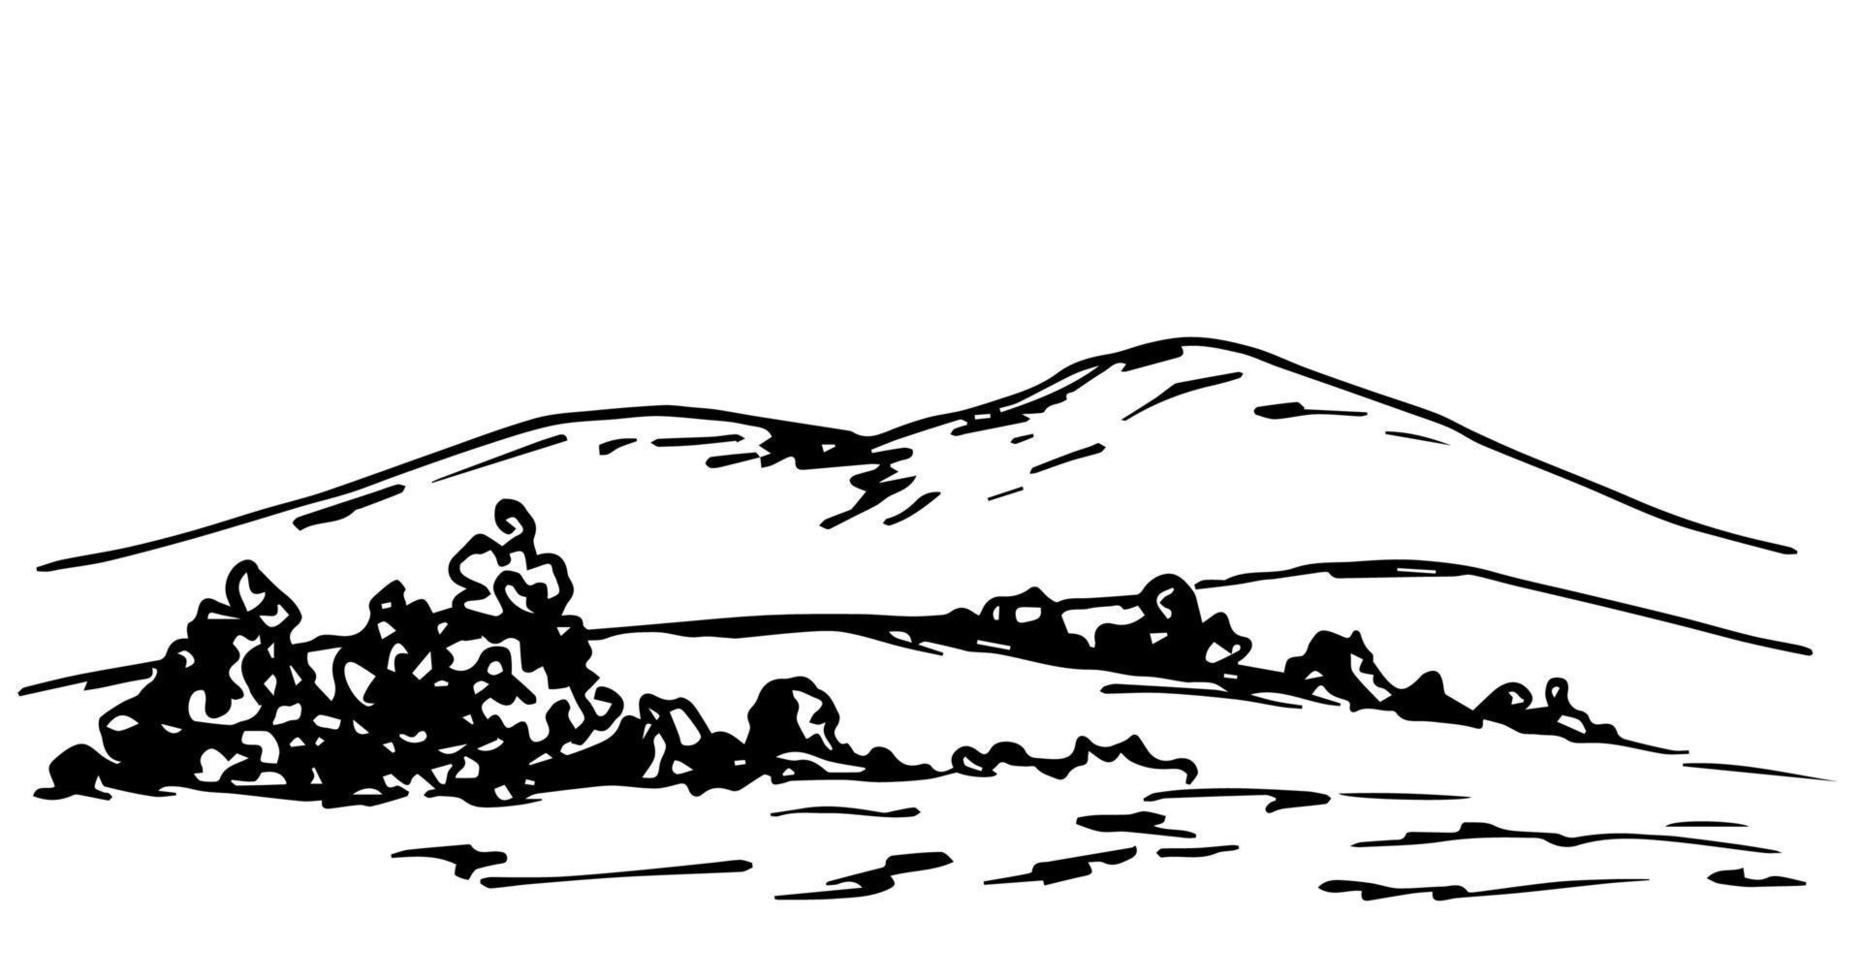 illustrazione vettoriale semplice disegnata a mano con contorno nero. paesaggio di montagna, fauna selvatica, terreno collinare, alberi.